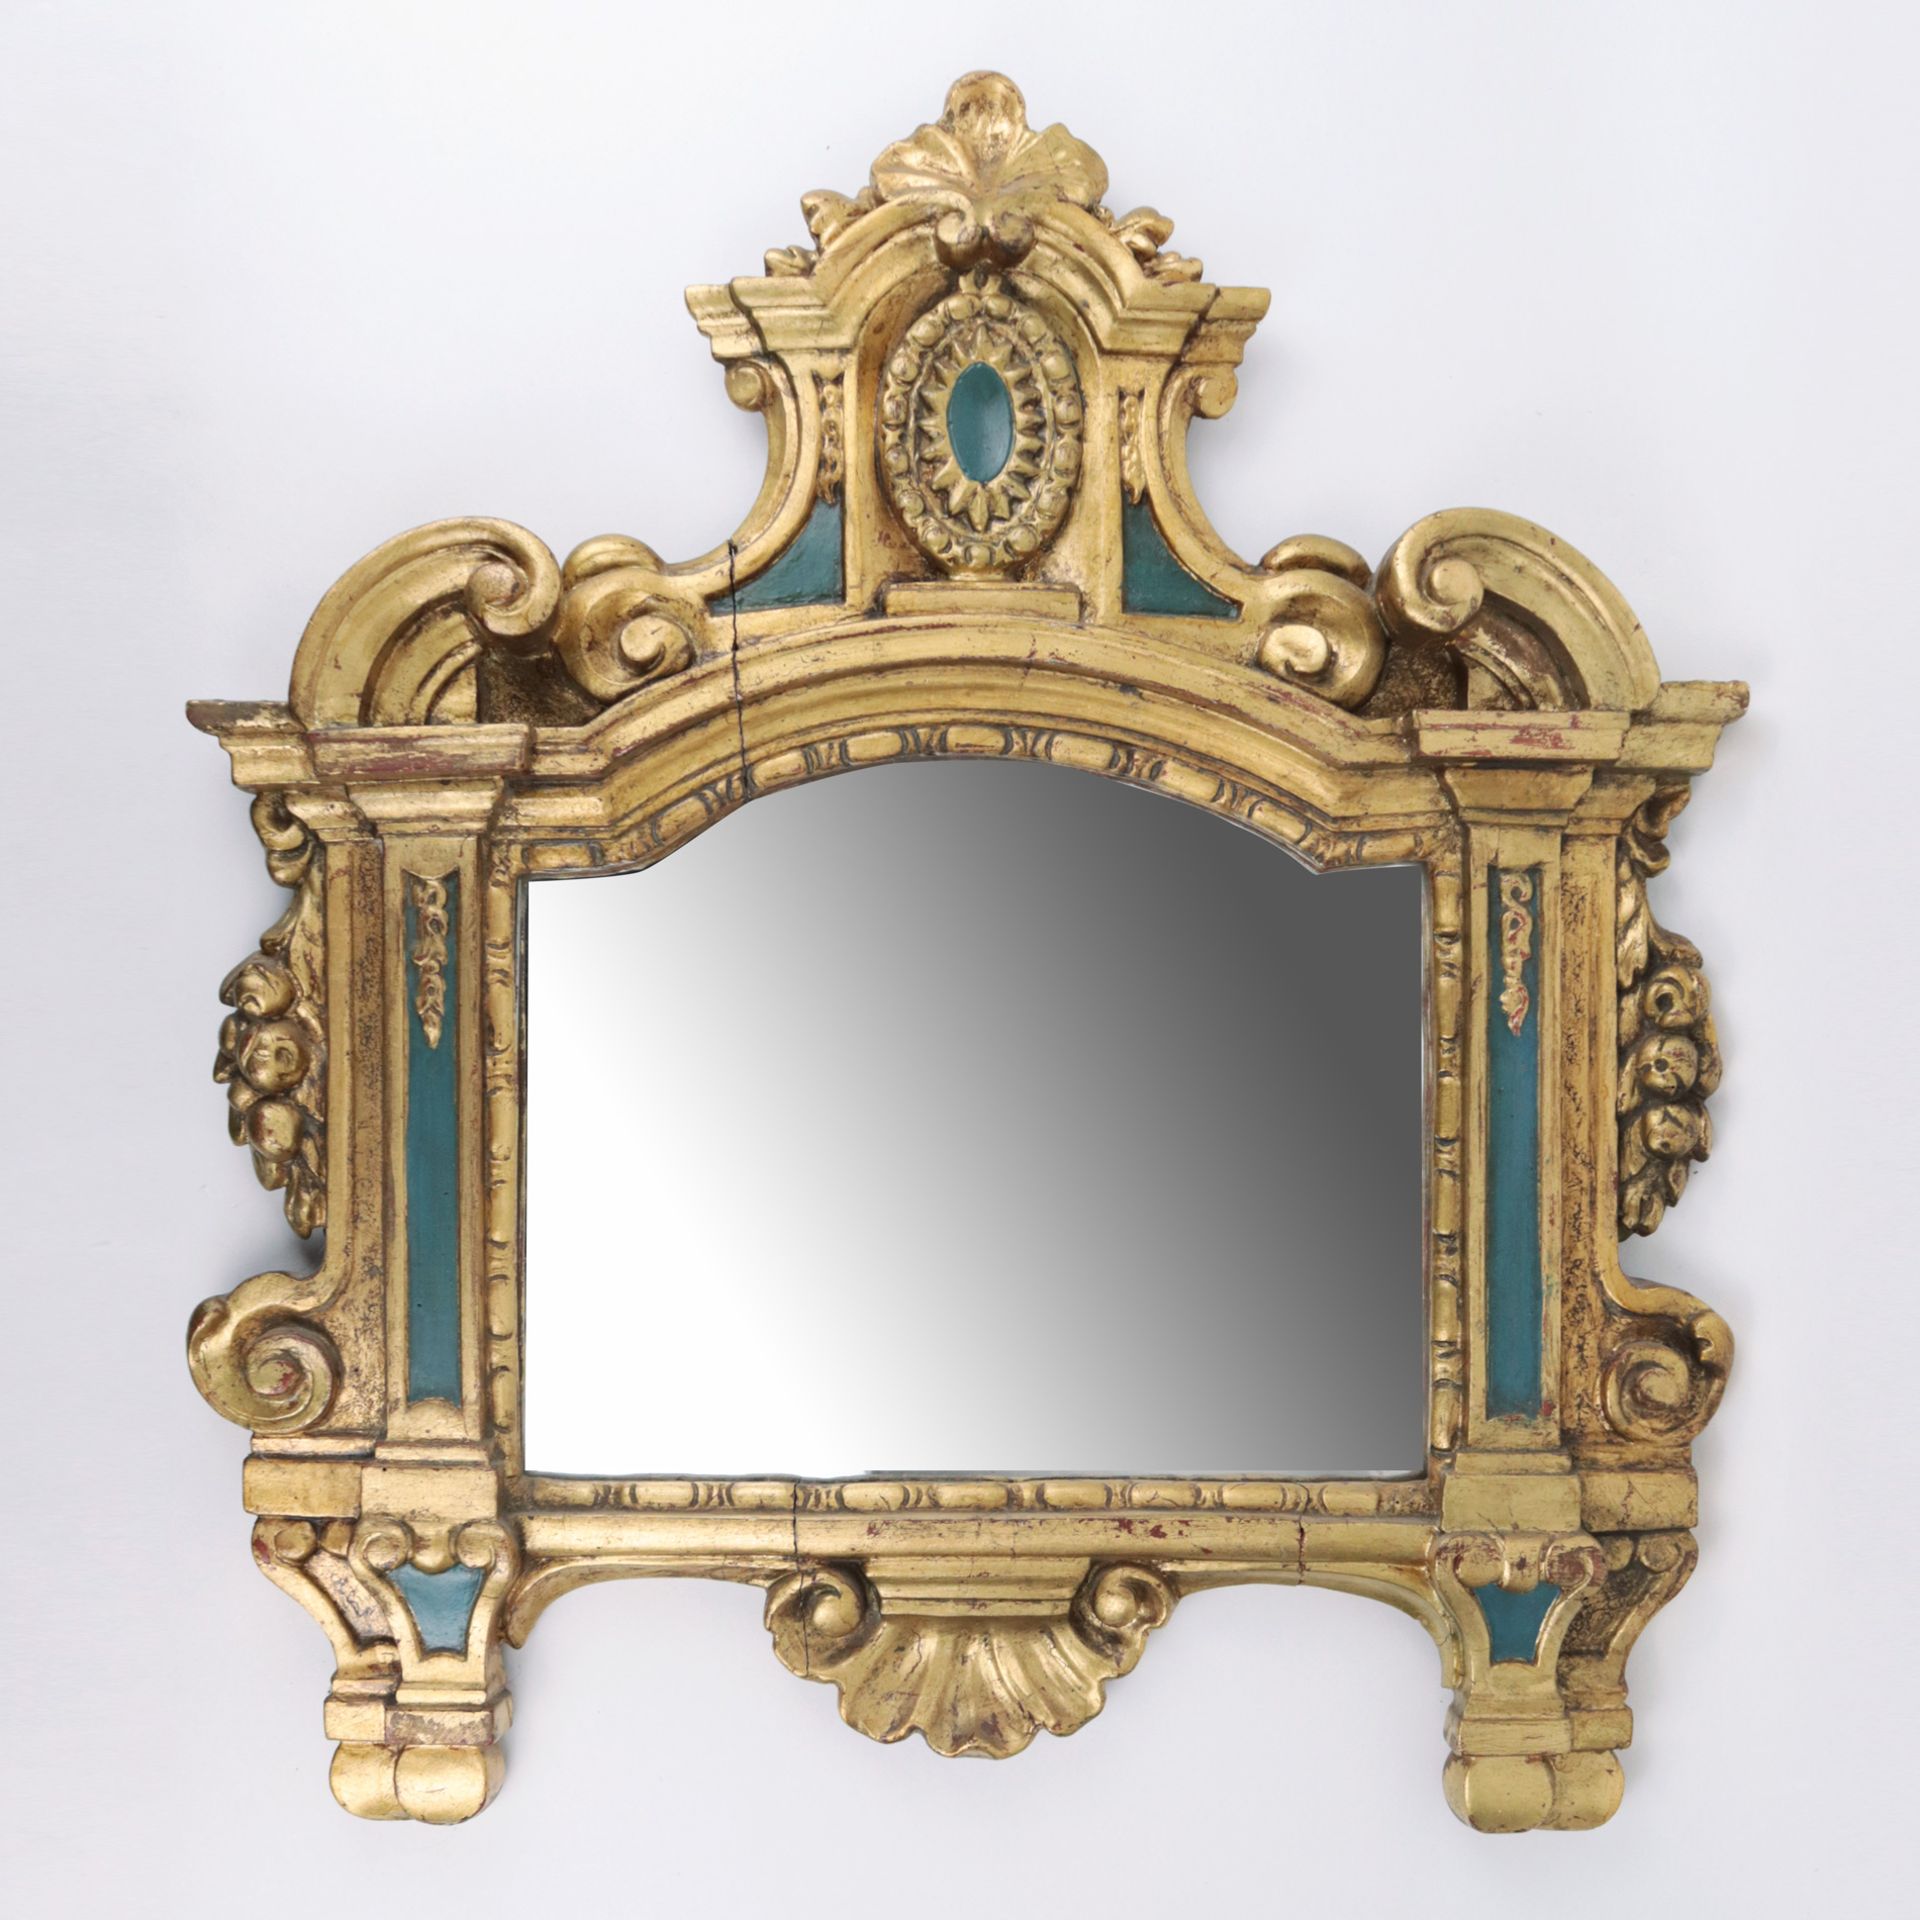 Wandspiegel 18. Jh., Holz, gefasst in Gold u. Blau, rechteckige Form m. Rundbogen u. B